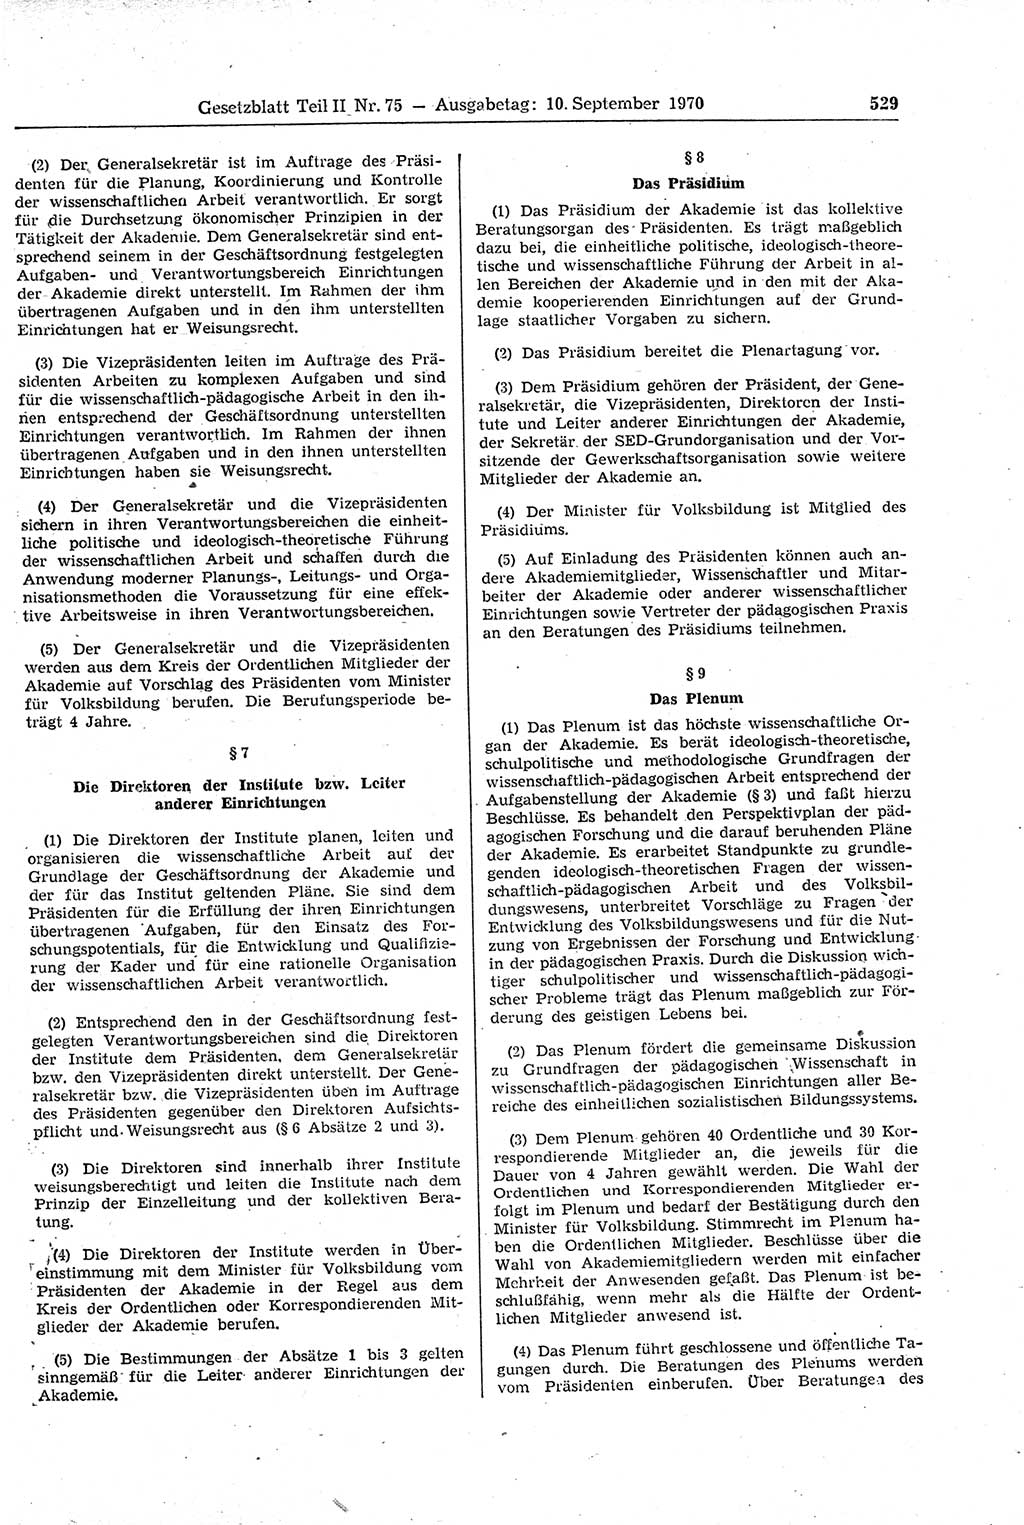 Gesetzblatt (GBl.) der Deutschen Demokratischen Republik (DDR) Teil ⅠⅠ 1970, Seite 529 (GBl. DDR ⅠⅠ 1970, S. 529)